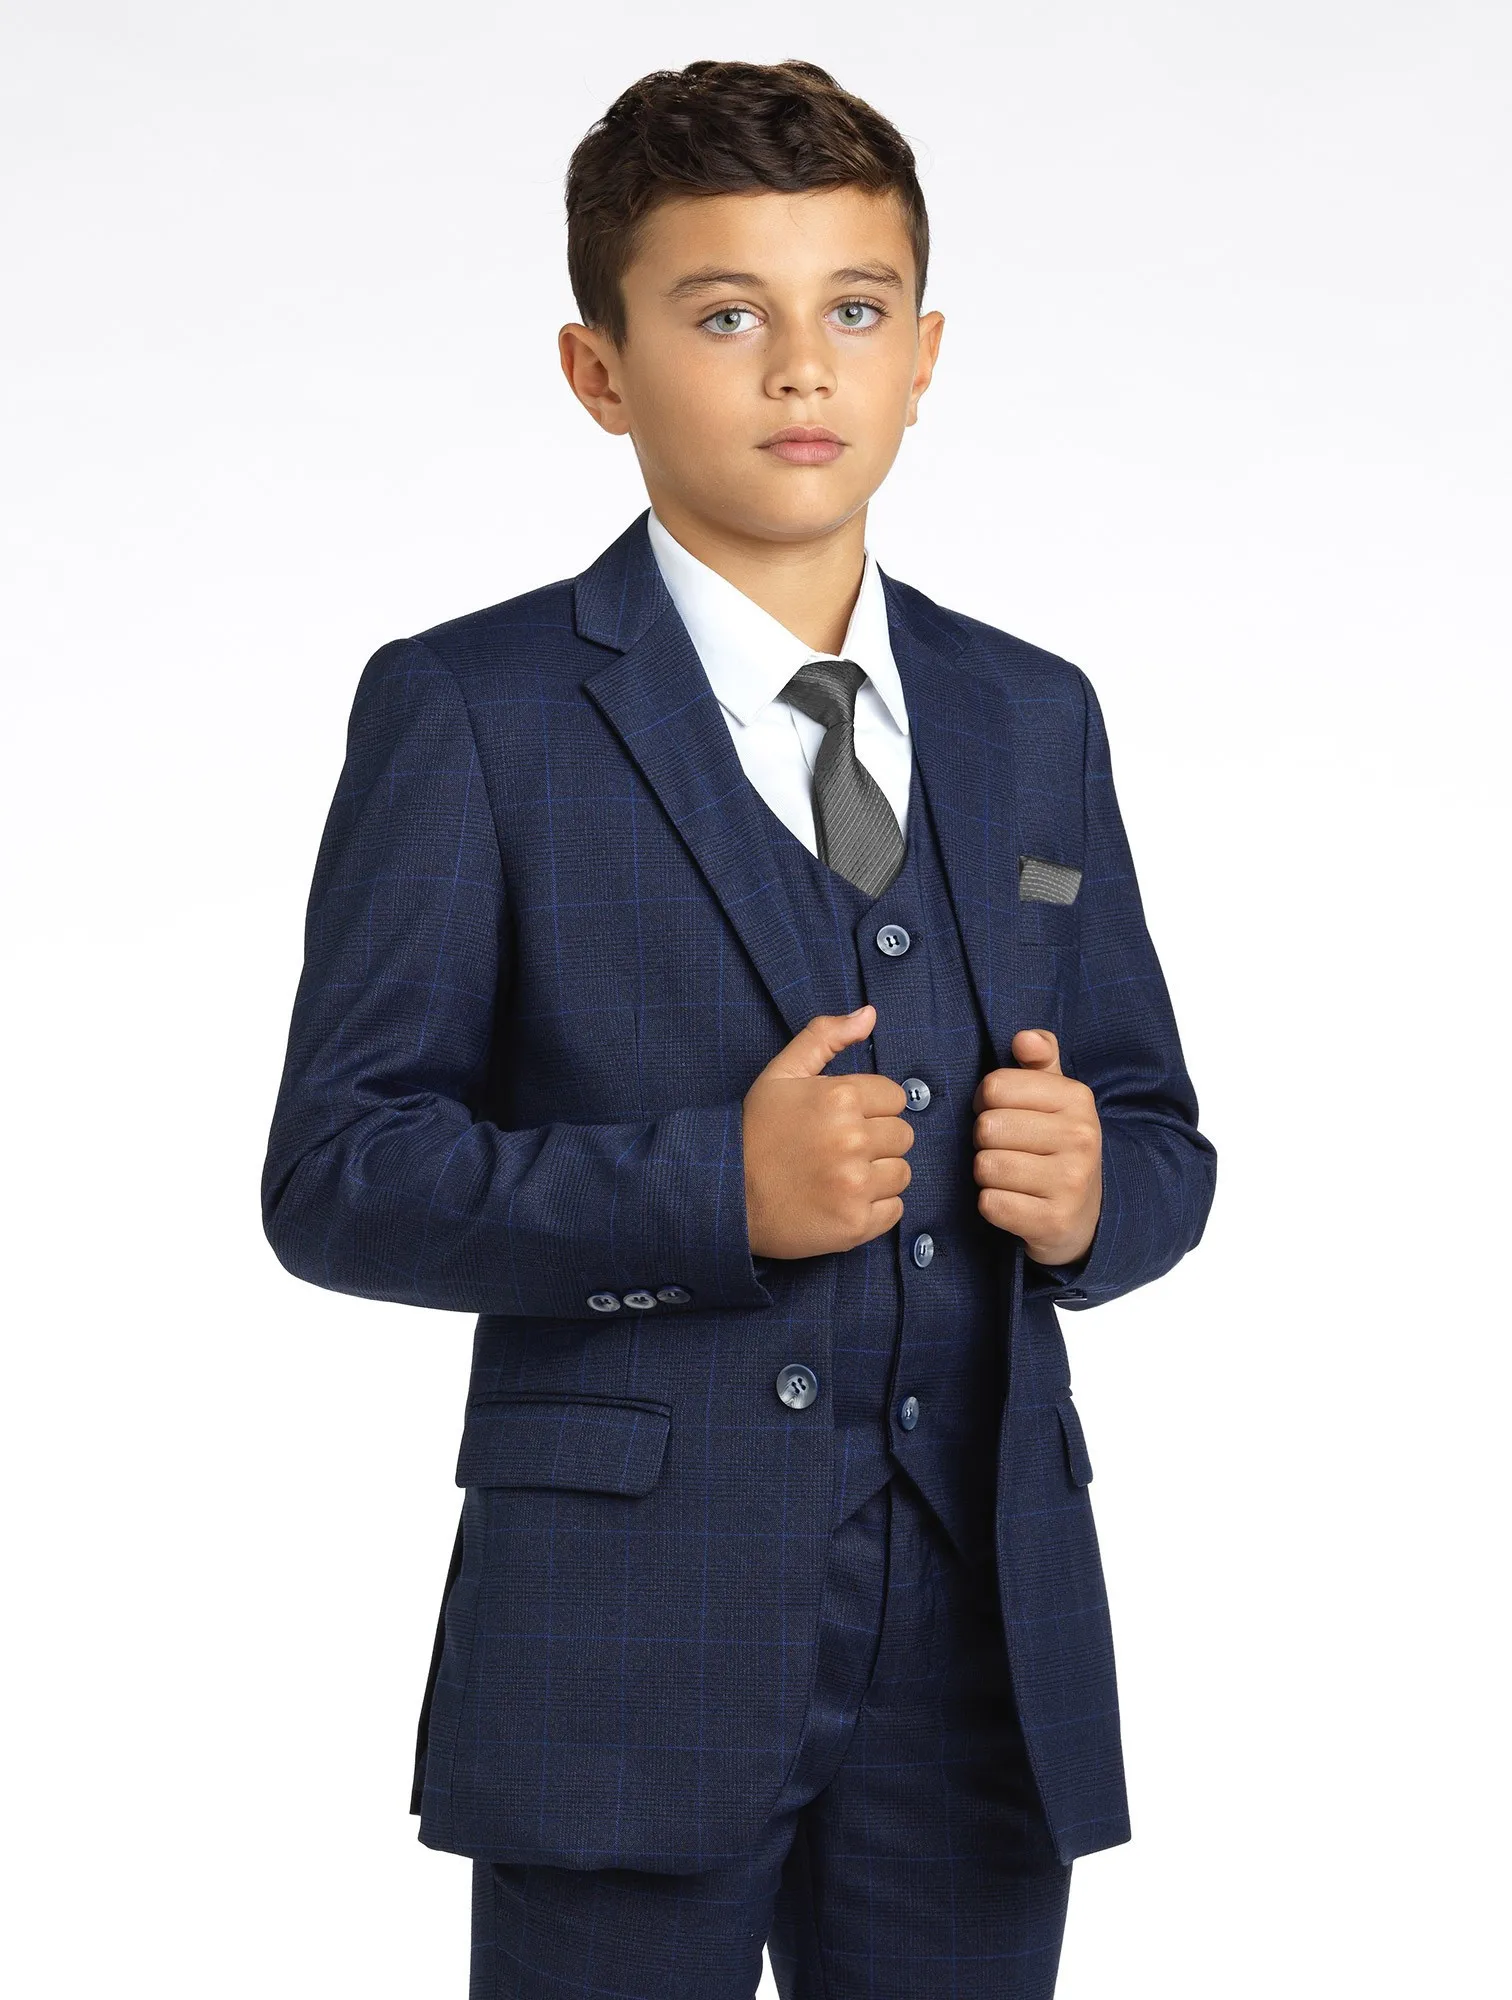 Boys Suit Plaid Three-piece Suit Formal Fit Formal Occasion Wedding Party Jacket + Vest + Pants